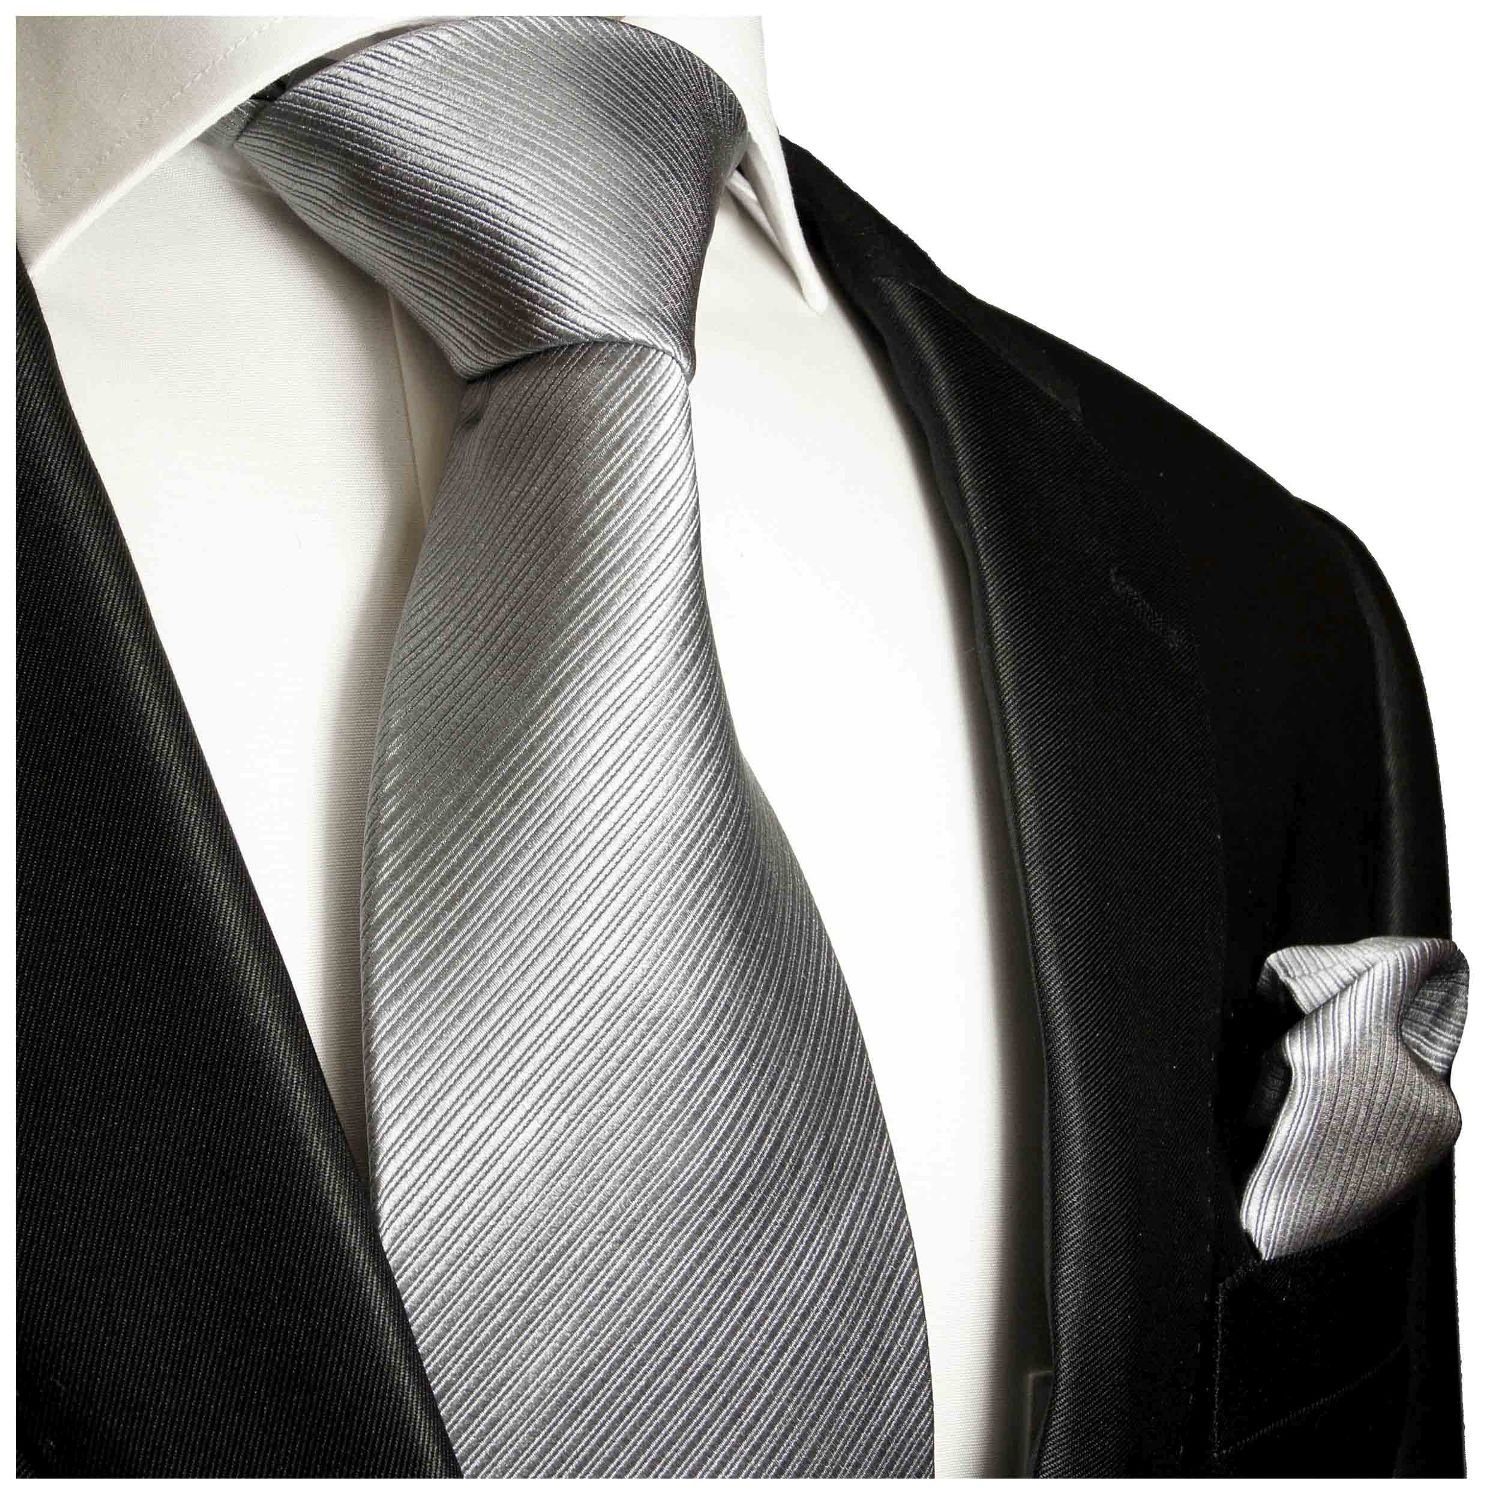 Krawatte+zwilling koordiniert+clutchbag,100% seide top-qualität,handgefertigt 